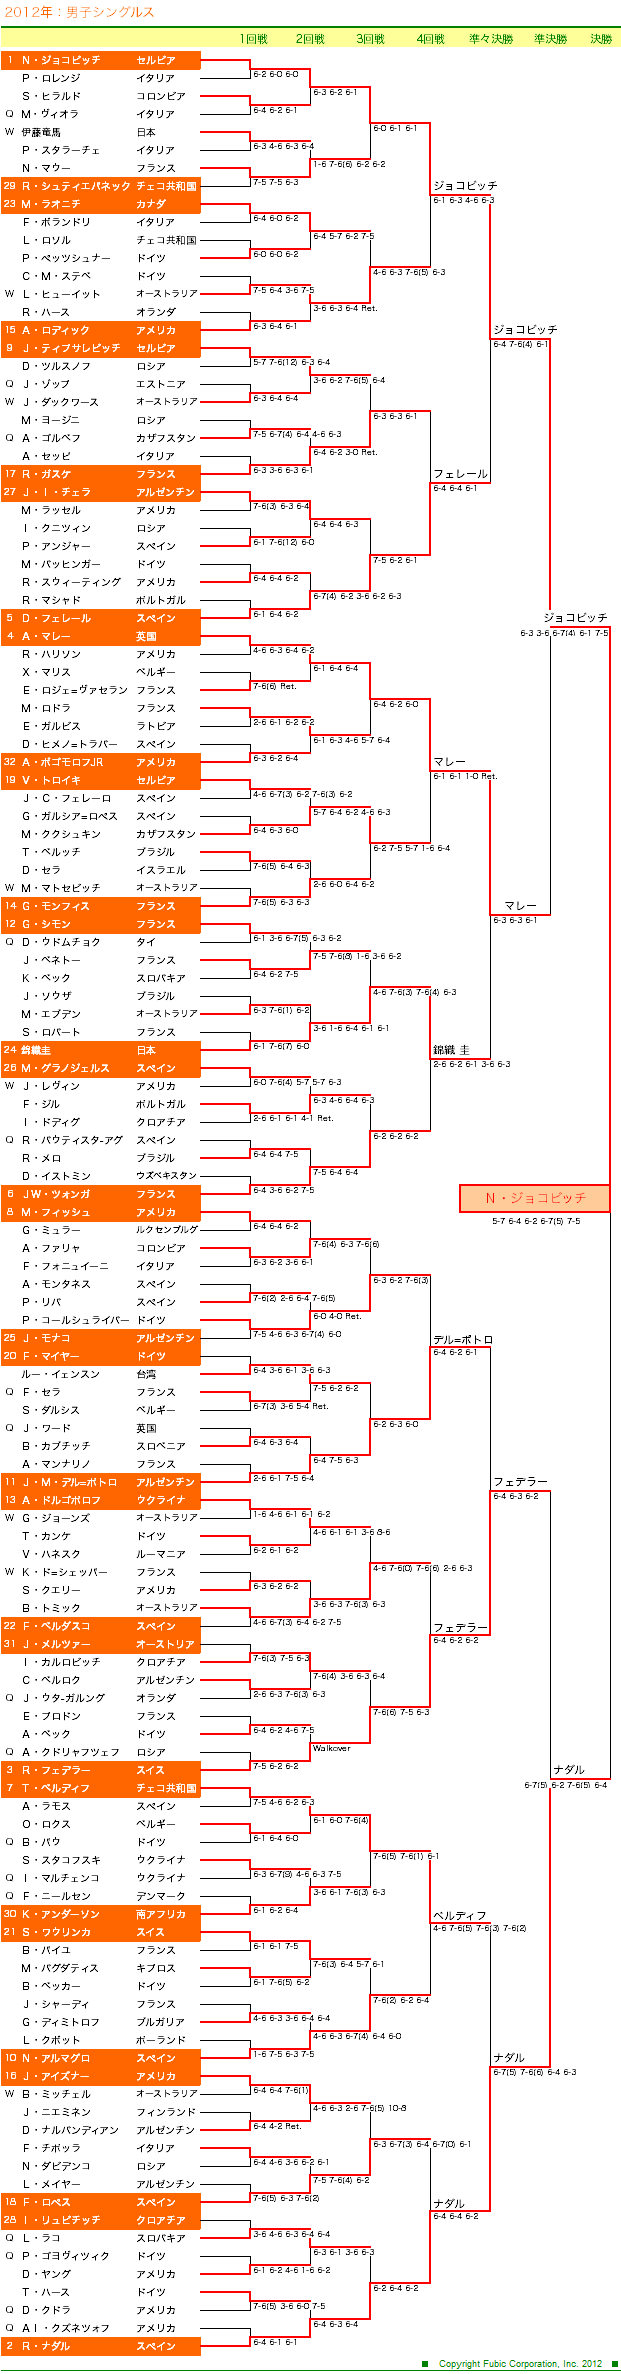 全豪オープンテニス2012　男子シングルスドロー表